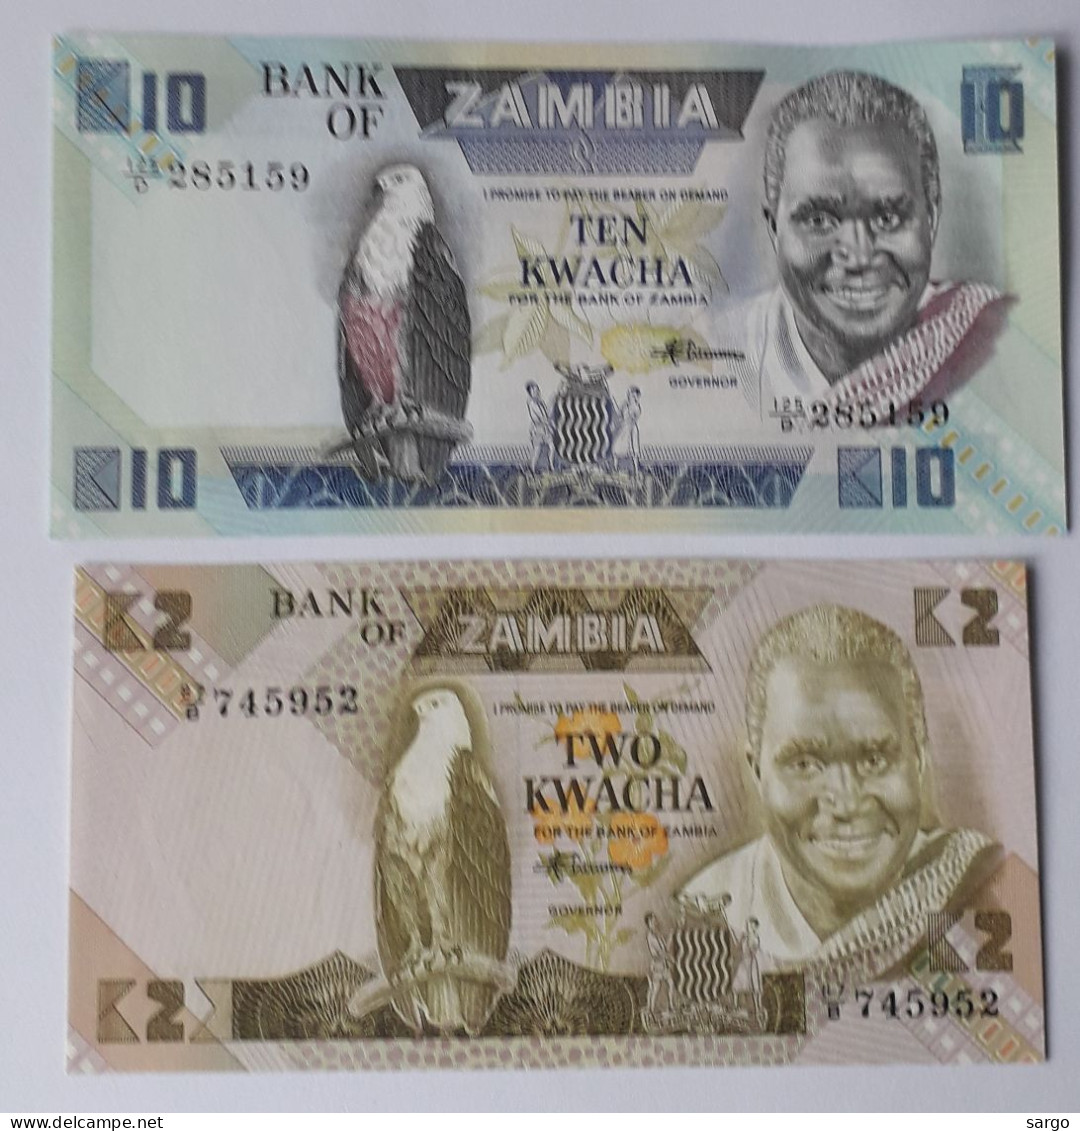 ZAMBIA - 2/10  KWACHA - P 24, P 26 (1980-1988) - 2 PCS  - UNC - BANKNOTES - PAPER MONEY - CARTAMONETA - - Zambie